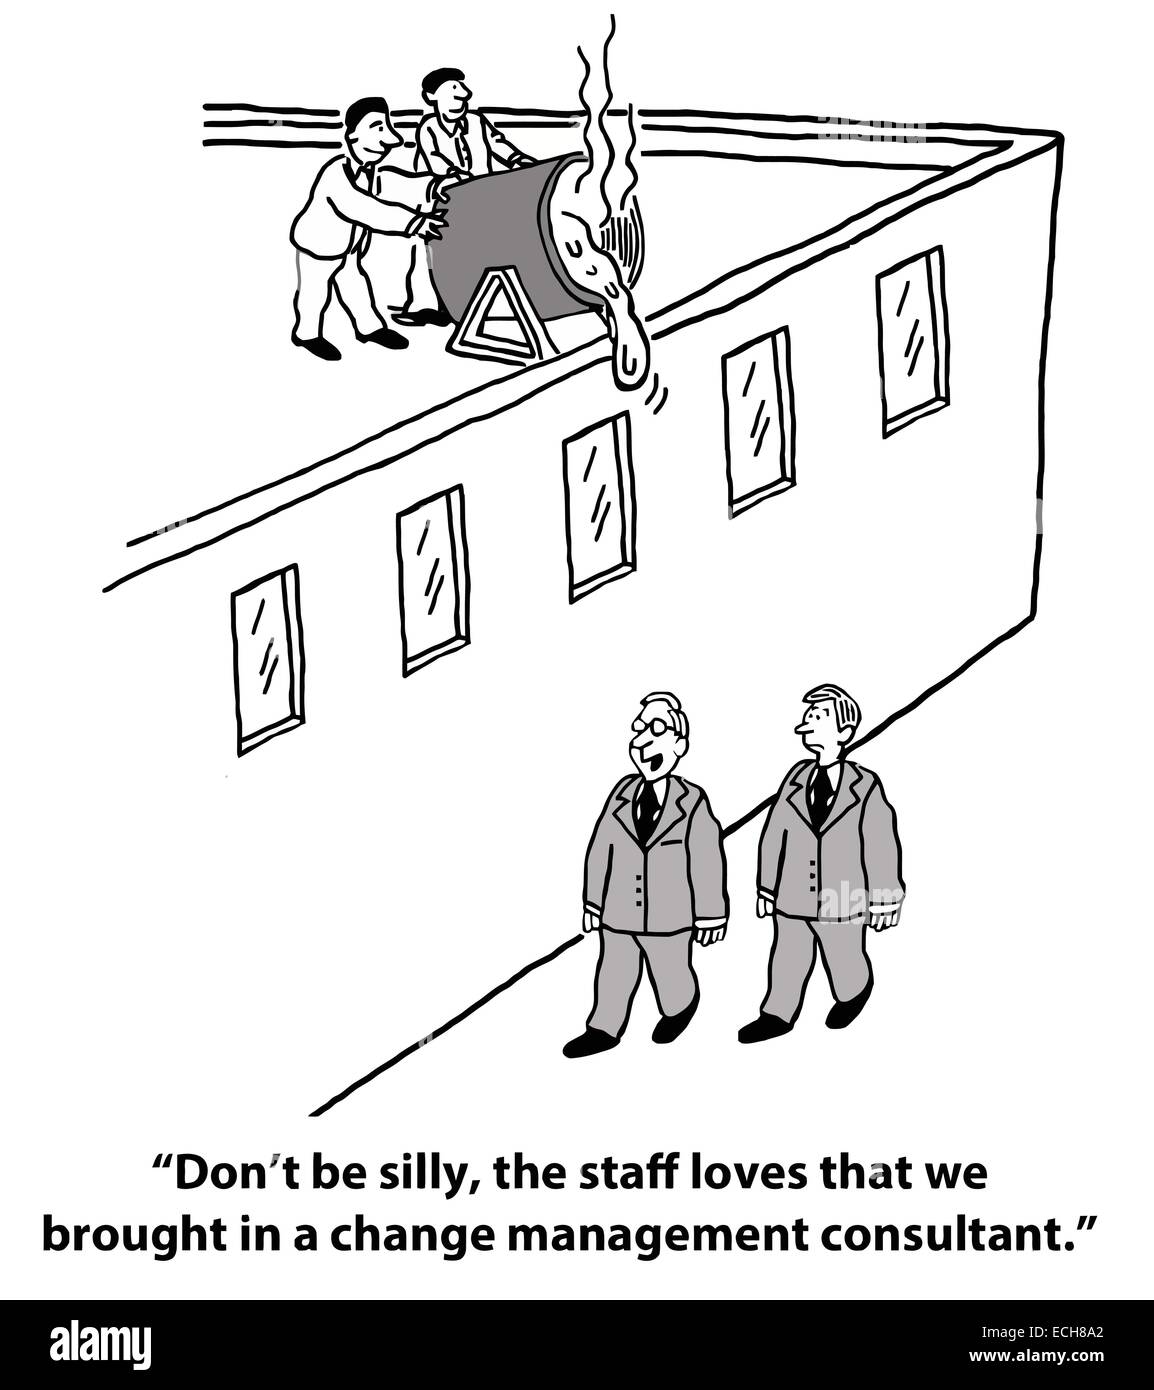 Der Chef ist aufgeregt und glücklich, dass das Unternehmen im Change Management Consultant, aber nicht das Personal brachte. Stock Vektor